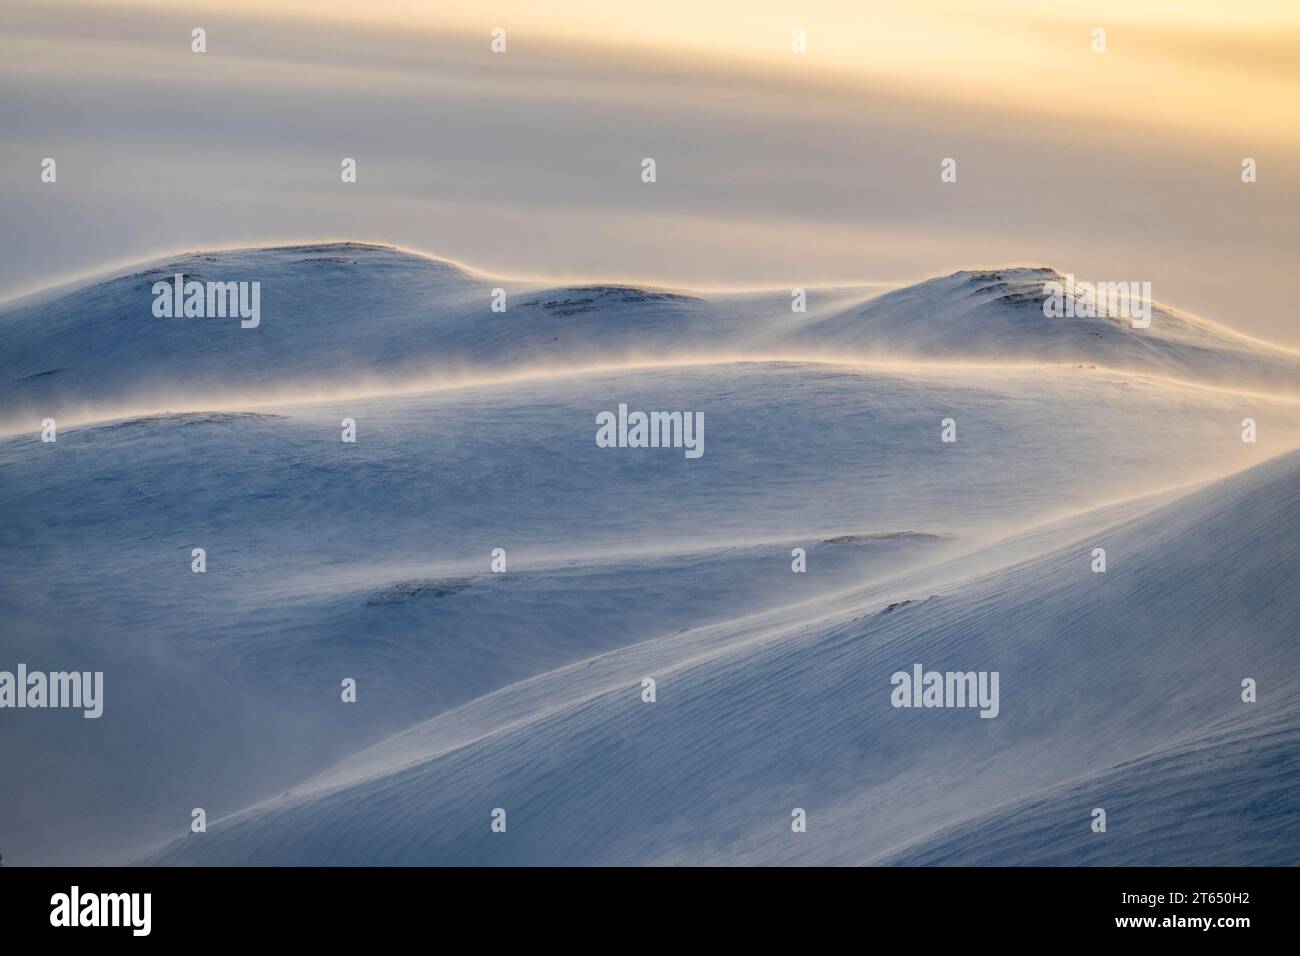 Paisaje ártico en invierno, paisaje nevado caído, península de Varanger, Finnmark, norte de Noruega, Noruega Foto de stock